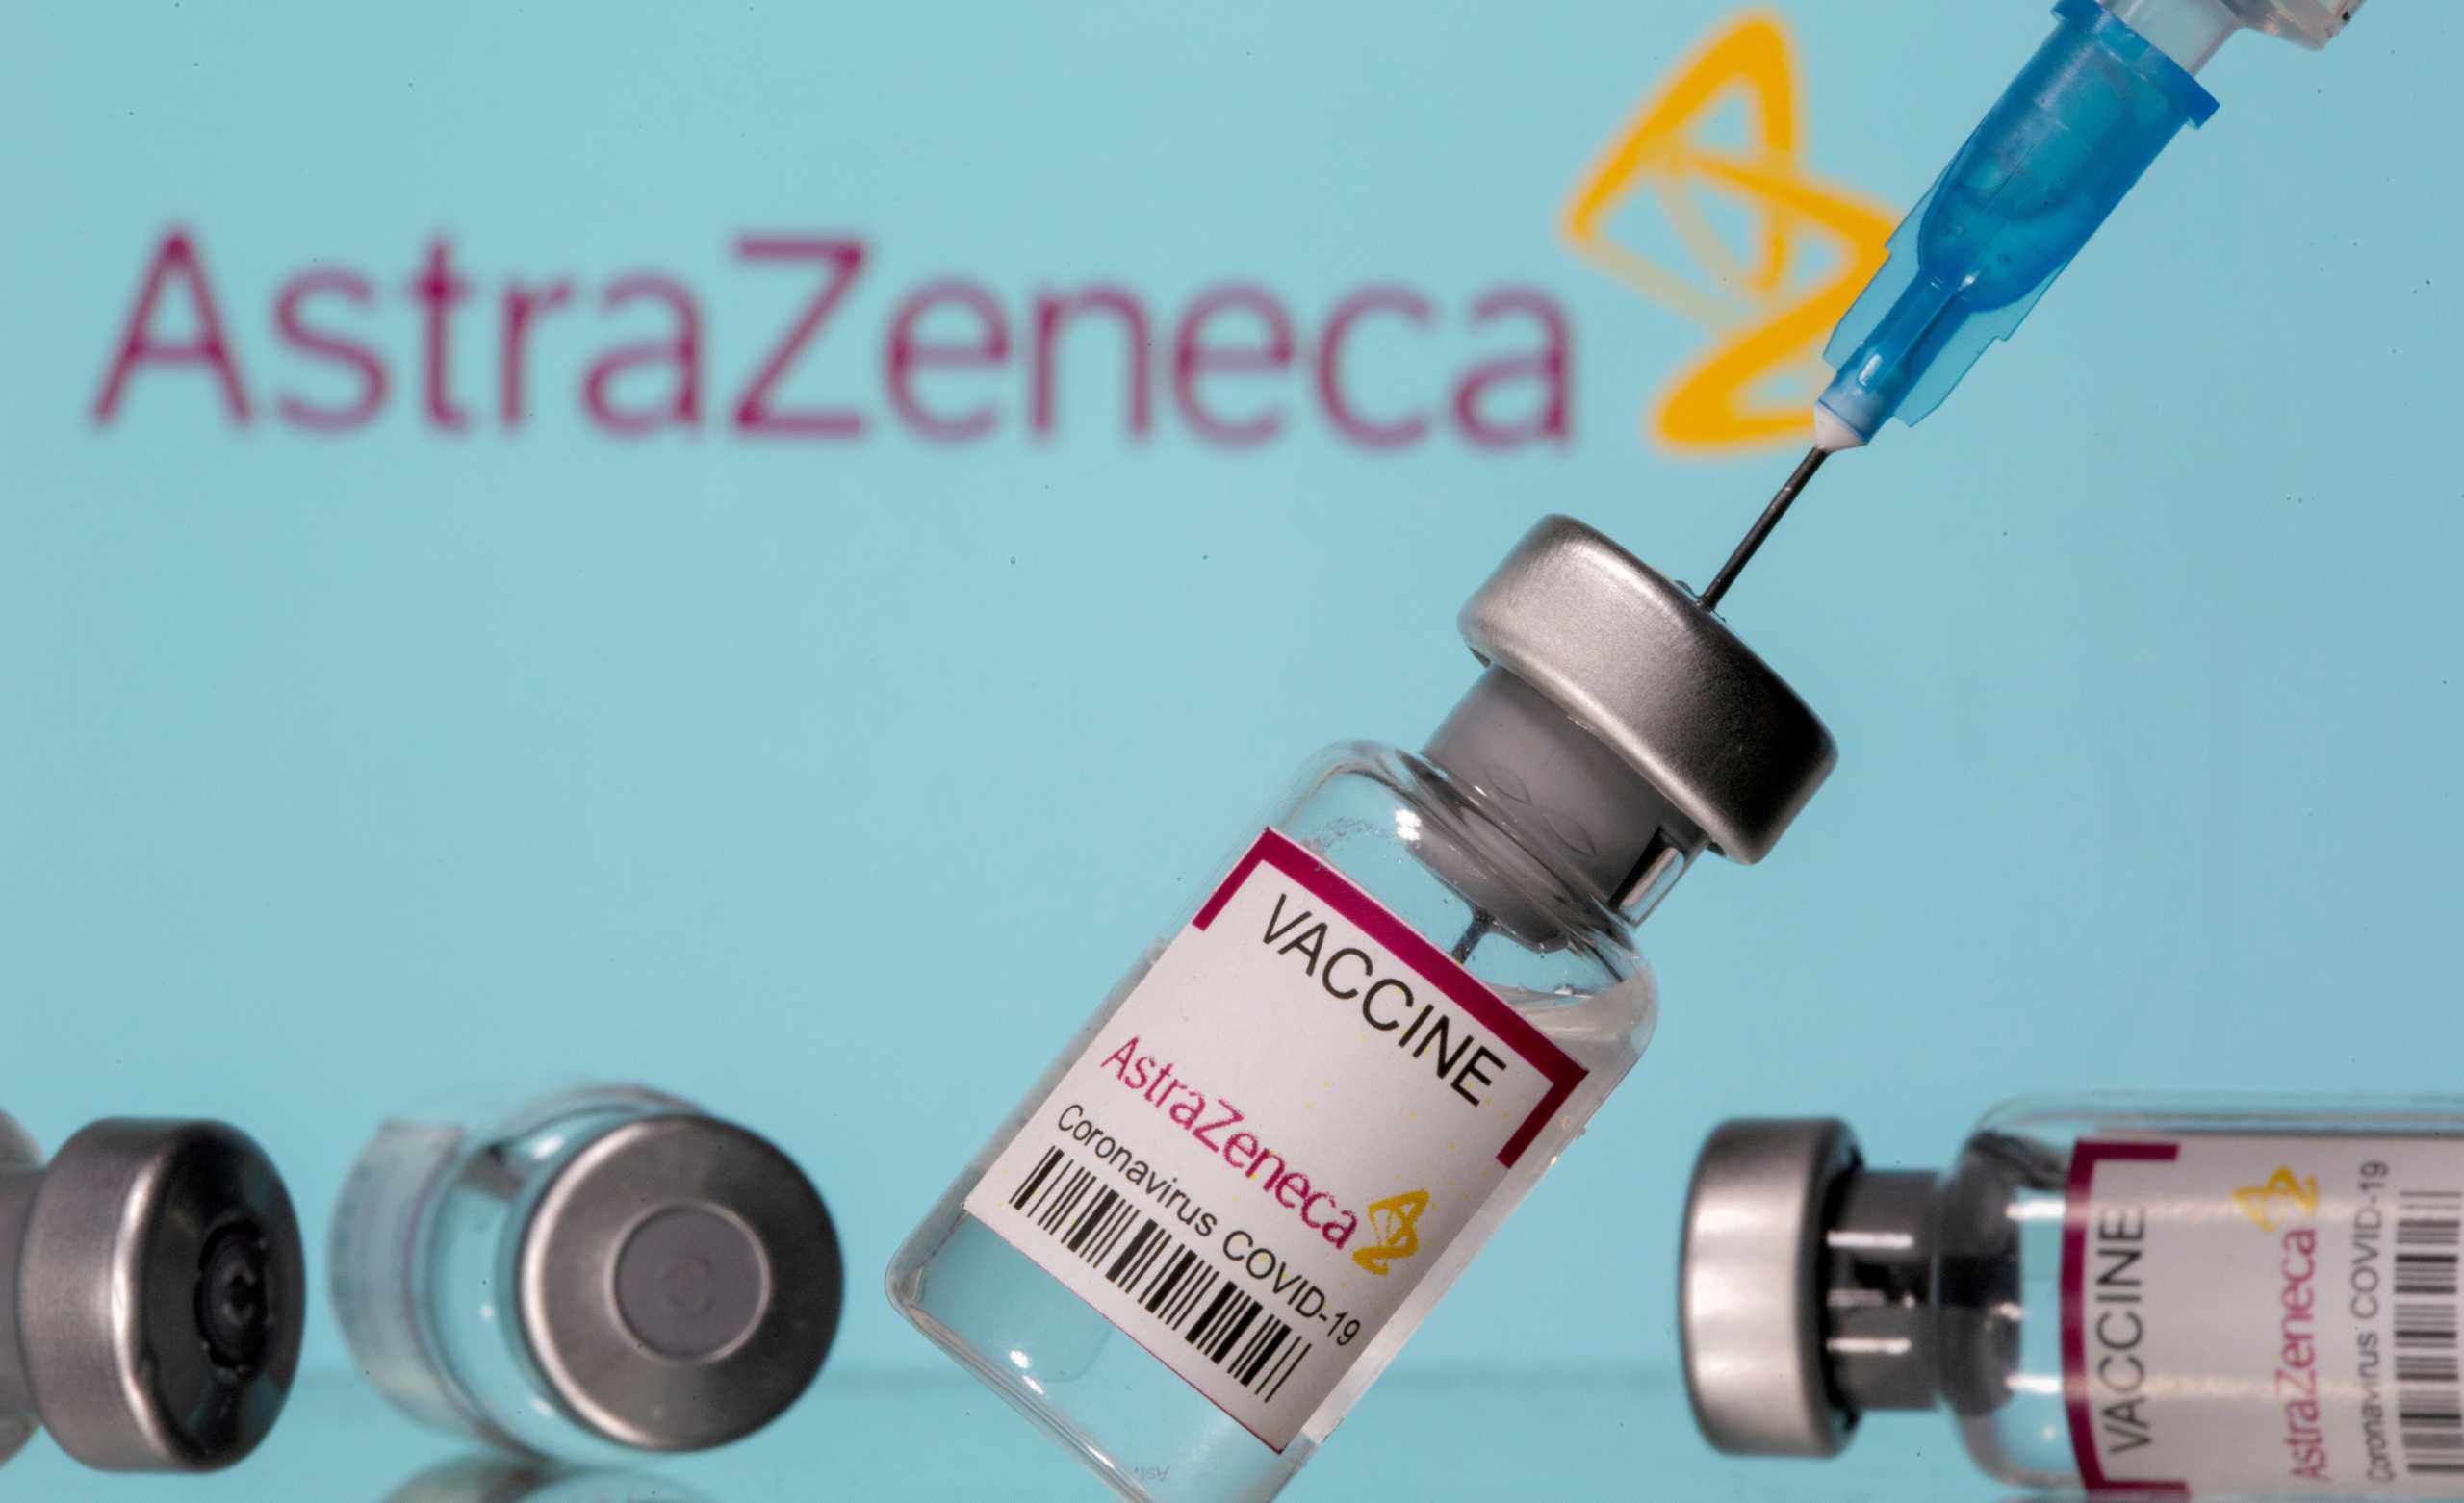 Παγώνη σε Live News: Δεν αποκλείουμε ένα εμβόλιο επειδή έχει 0,02% πιθανότητα για παρενέργειες